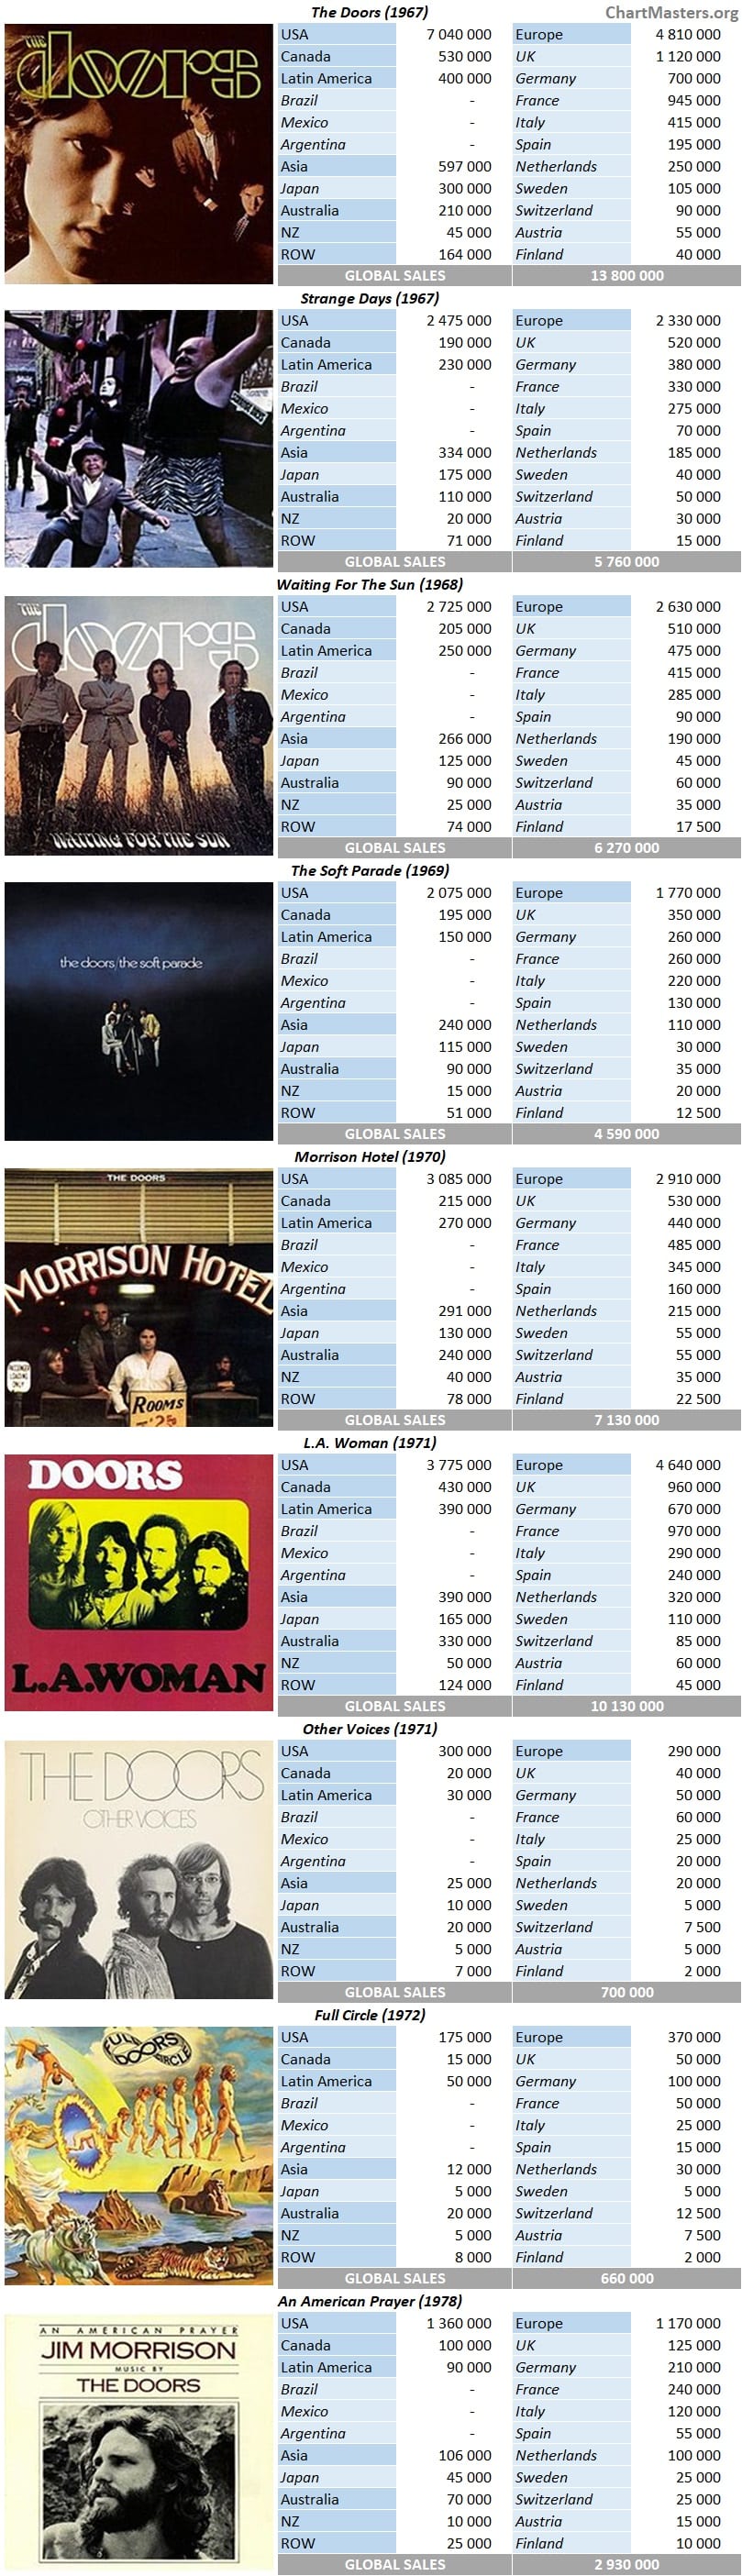 The Doors album sales breakdowns